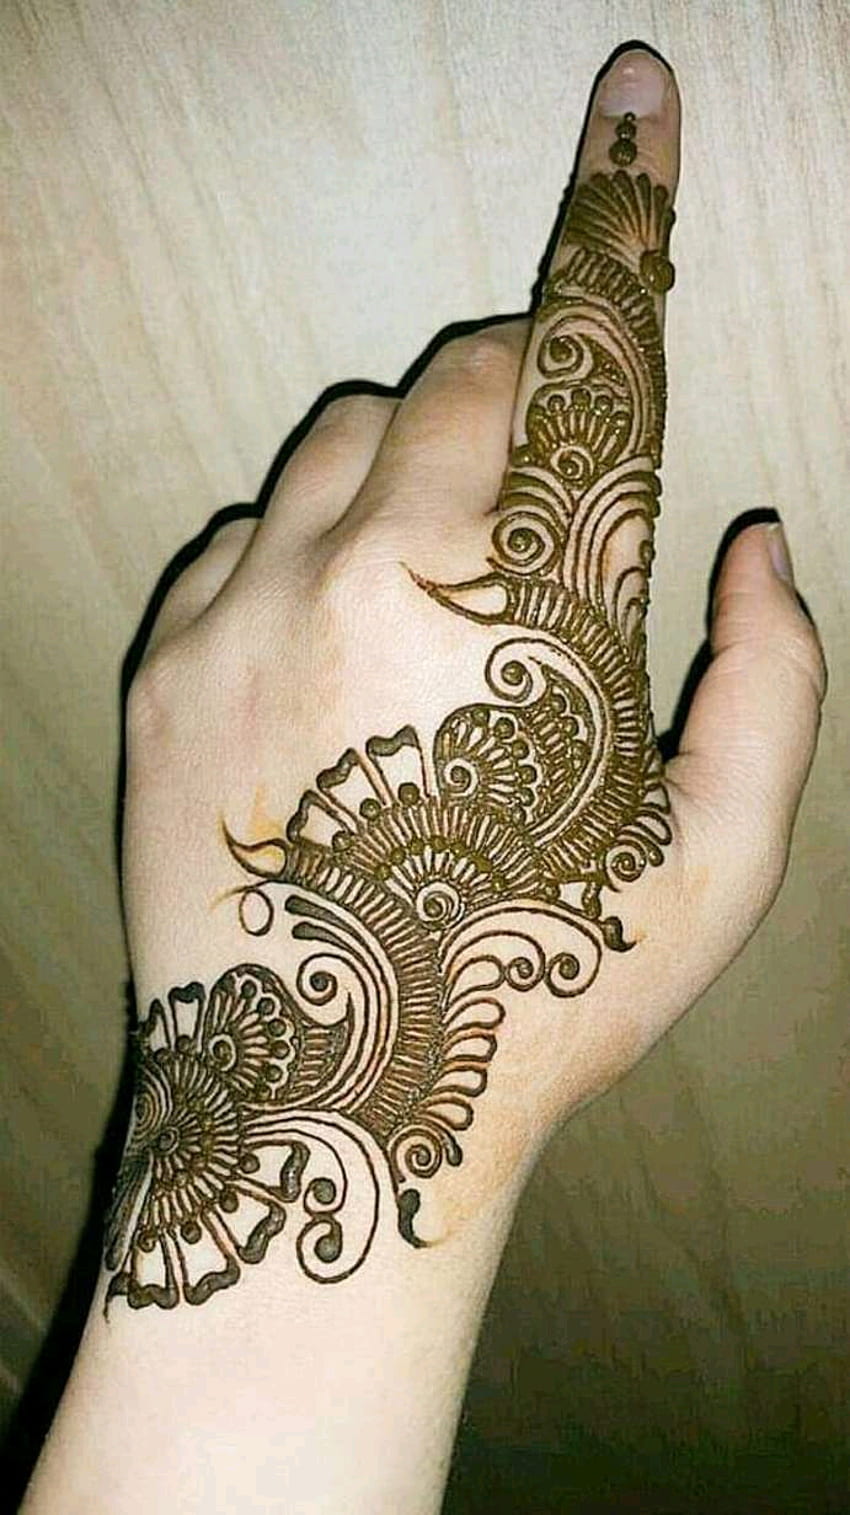 Karwa Chauth Mehndi Design 2022: करवा चौथ पर मेहंदी के इन खूबसूरत डिज़ाइन्स  से सजाएं अपने हाथ - Karwa Chauth Mehndi Designs 2022 Beautiful Henna Full  Hand Finger Mehandi Designs for Karva Chauth